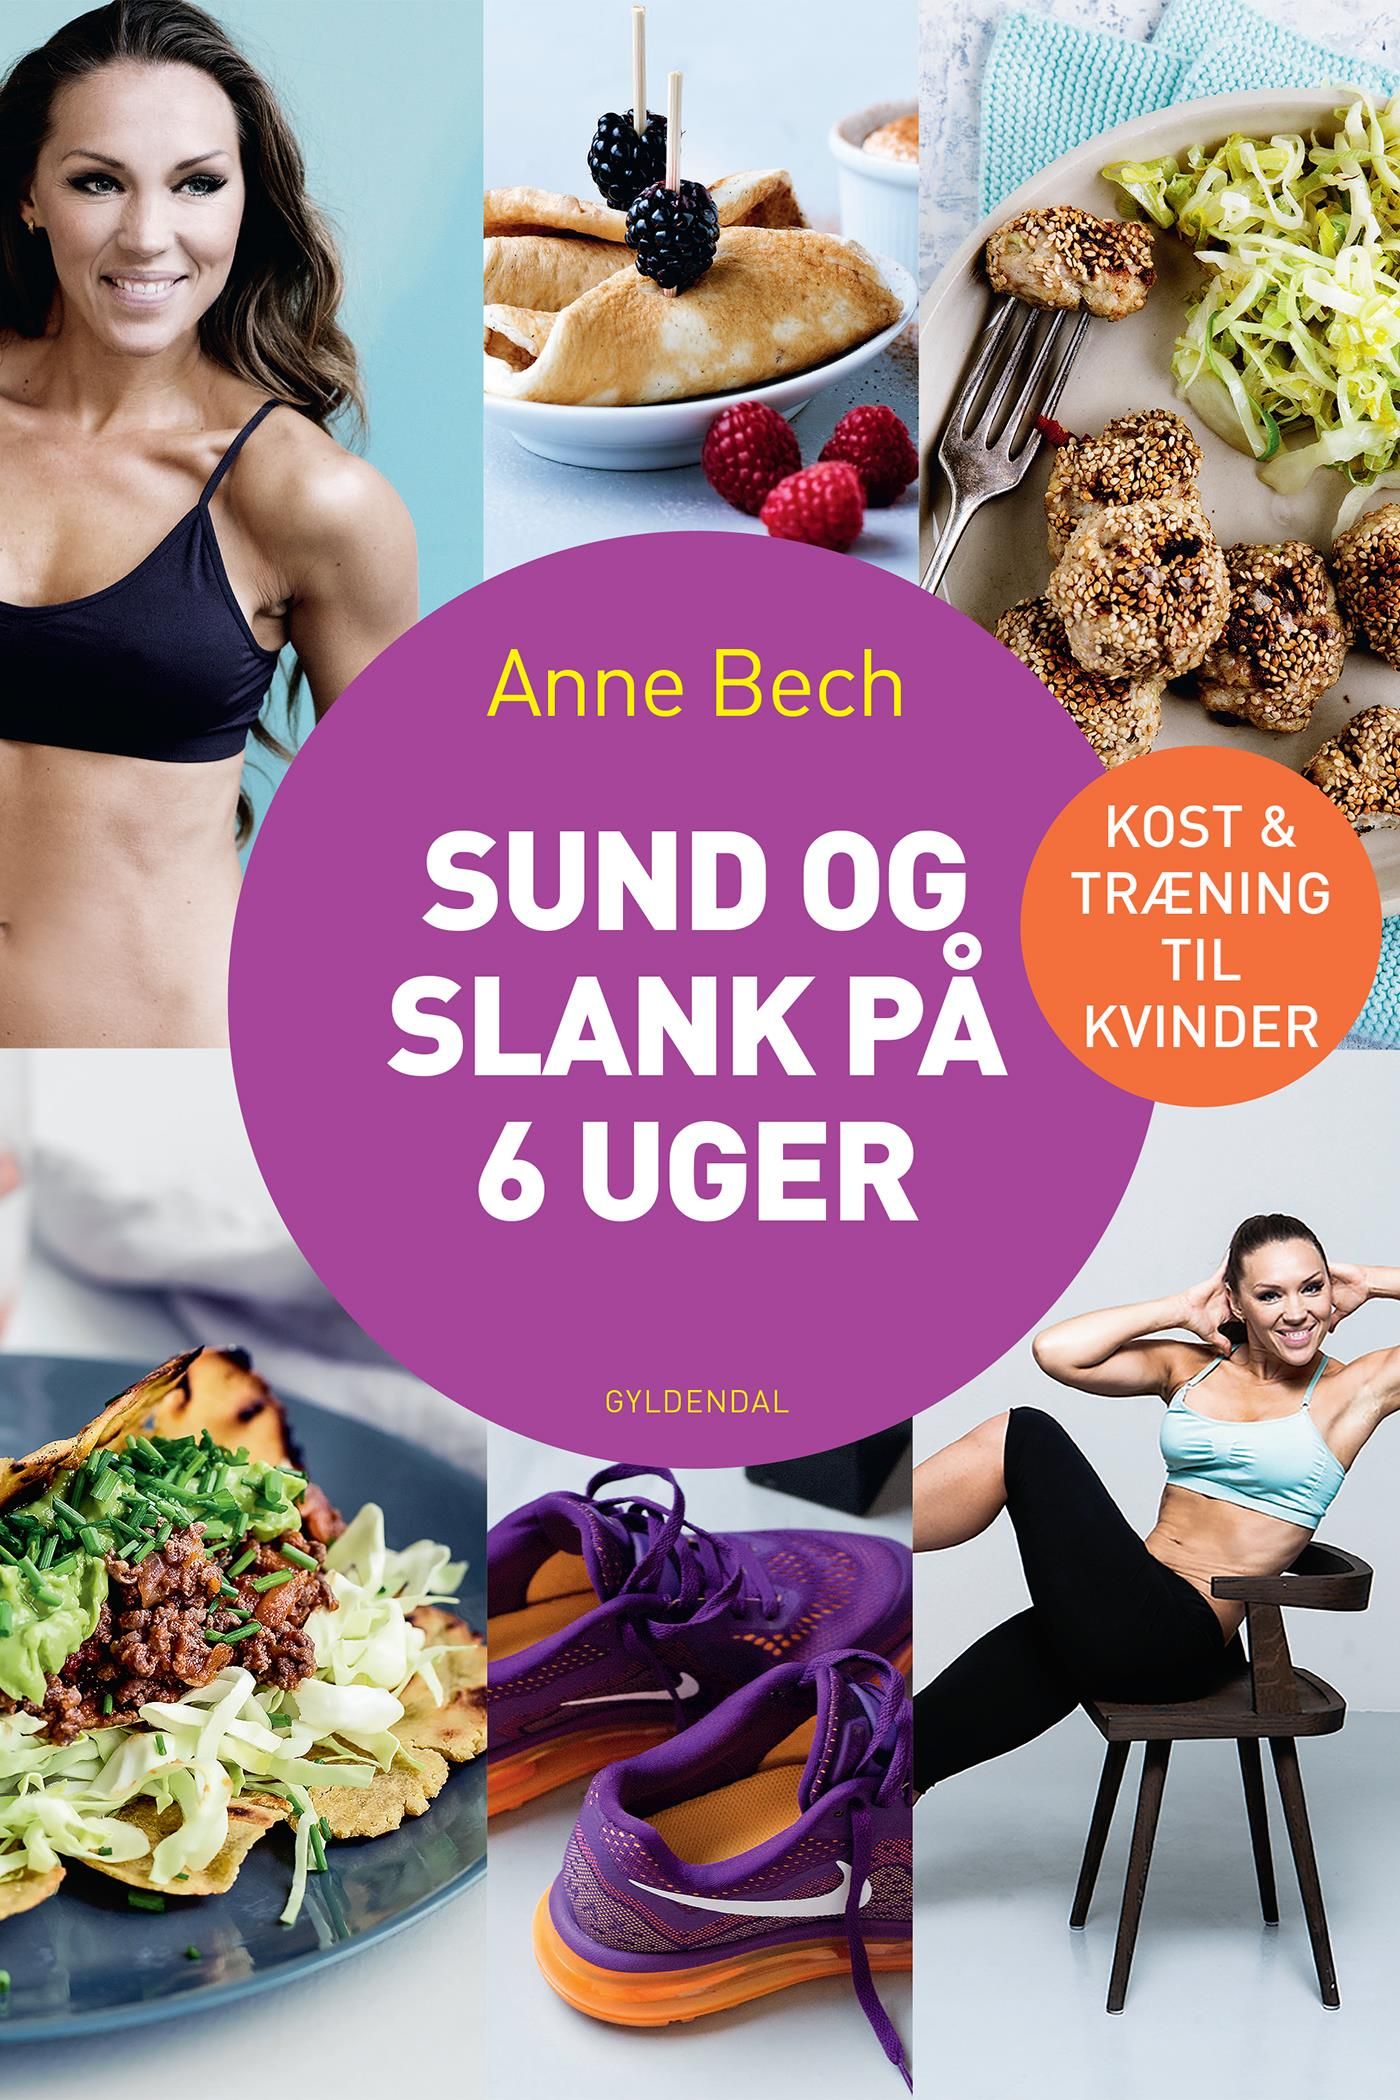 Sund og slank på 6 uger, e-bog af Anne Bech